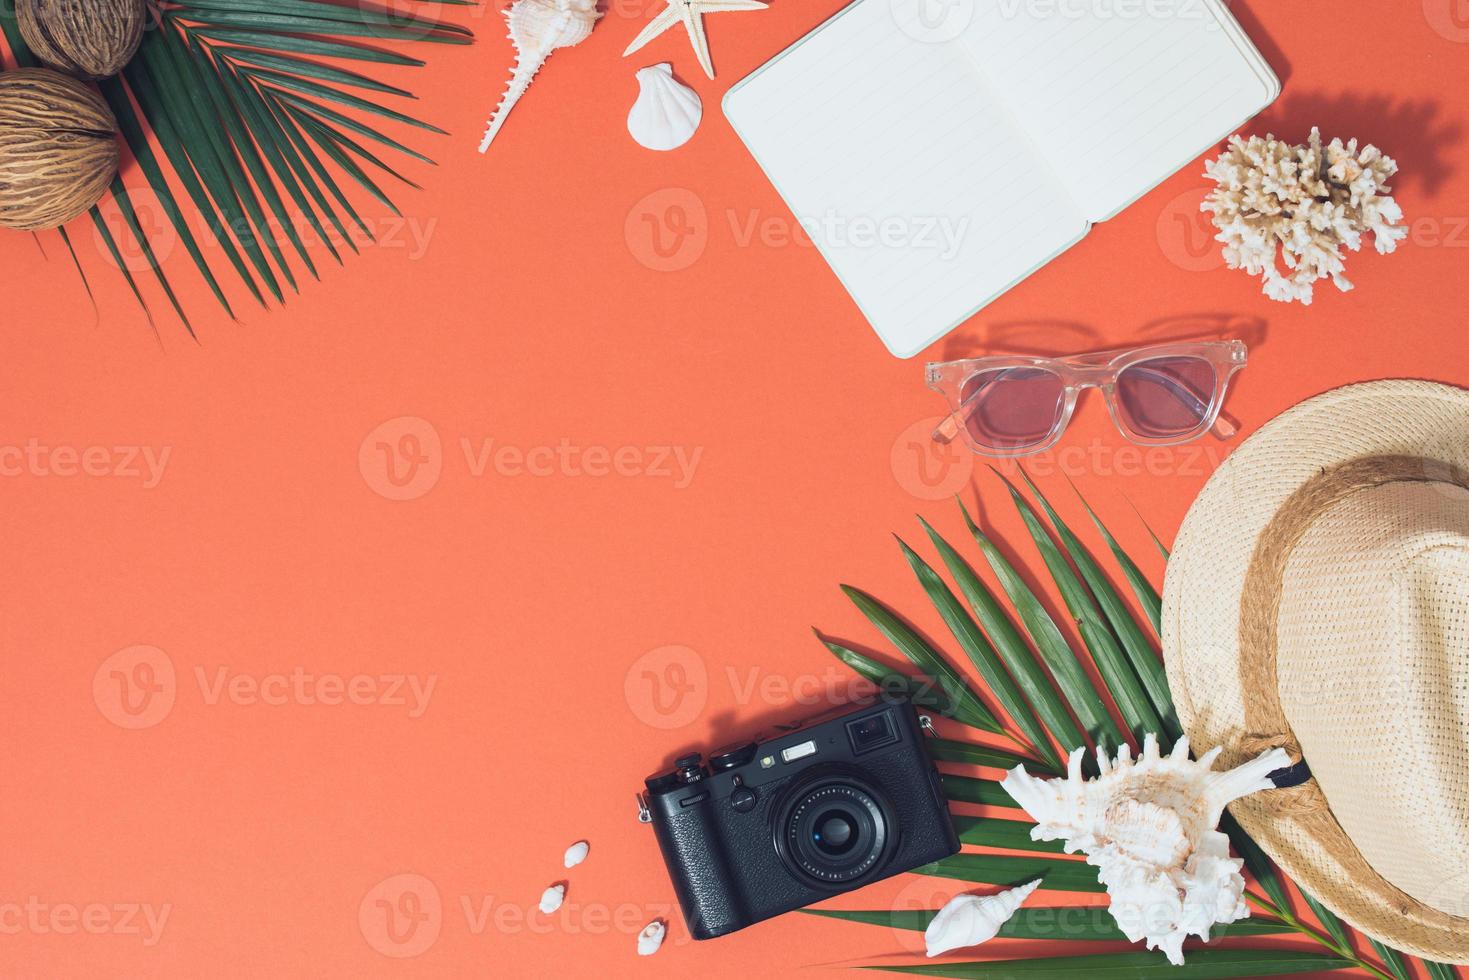 färgrik sommar högtider mode platt lägga - sugrör hatt, kamera, solglasögon, hav skal på ljus orange bakgrund foto